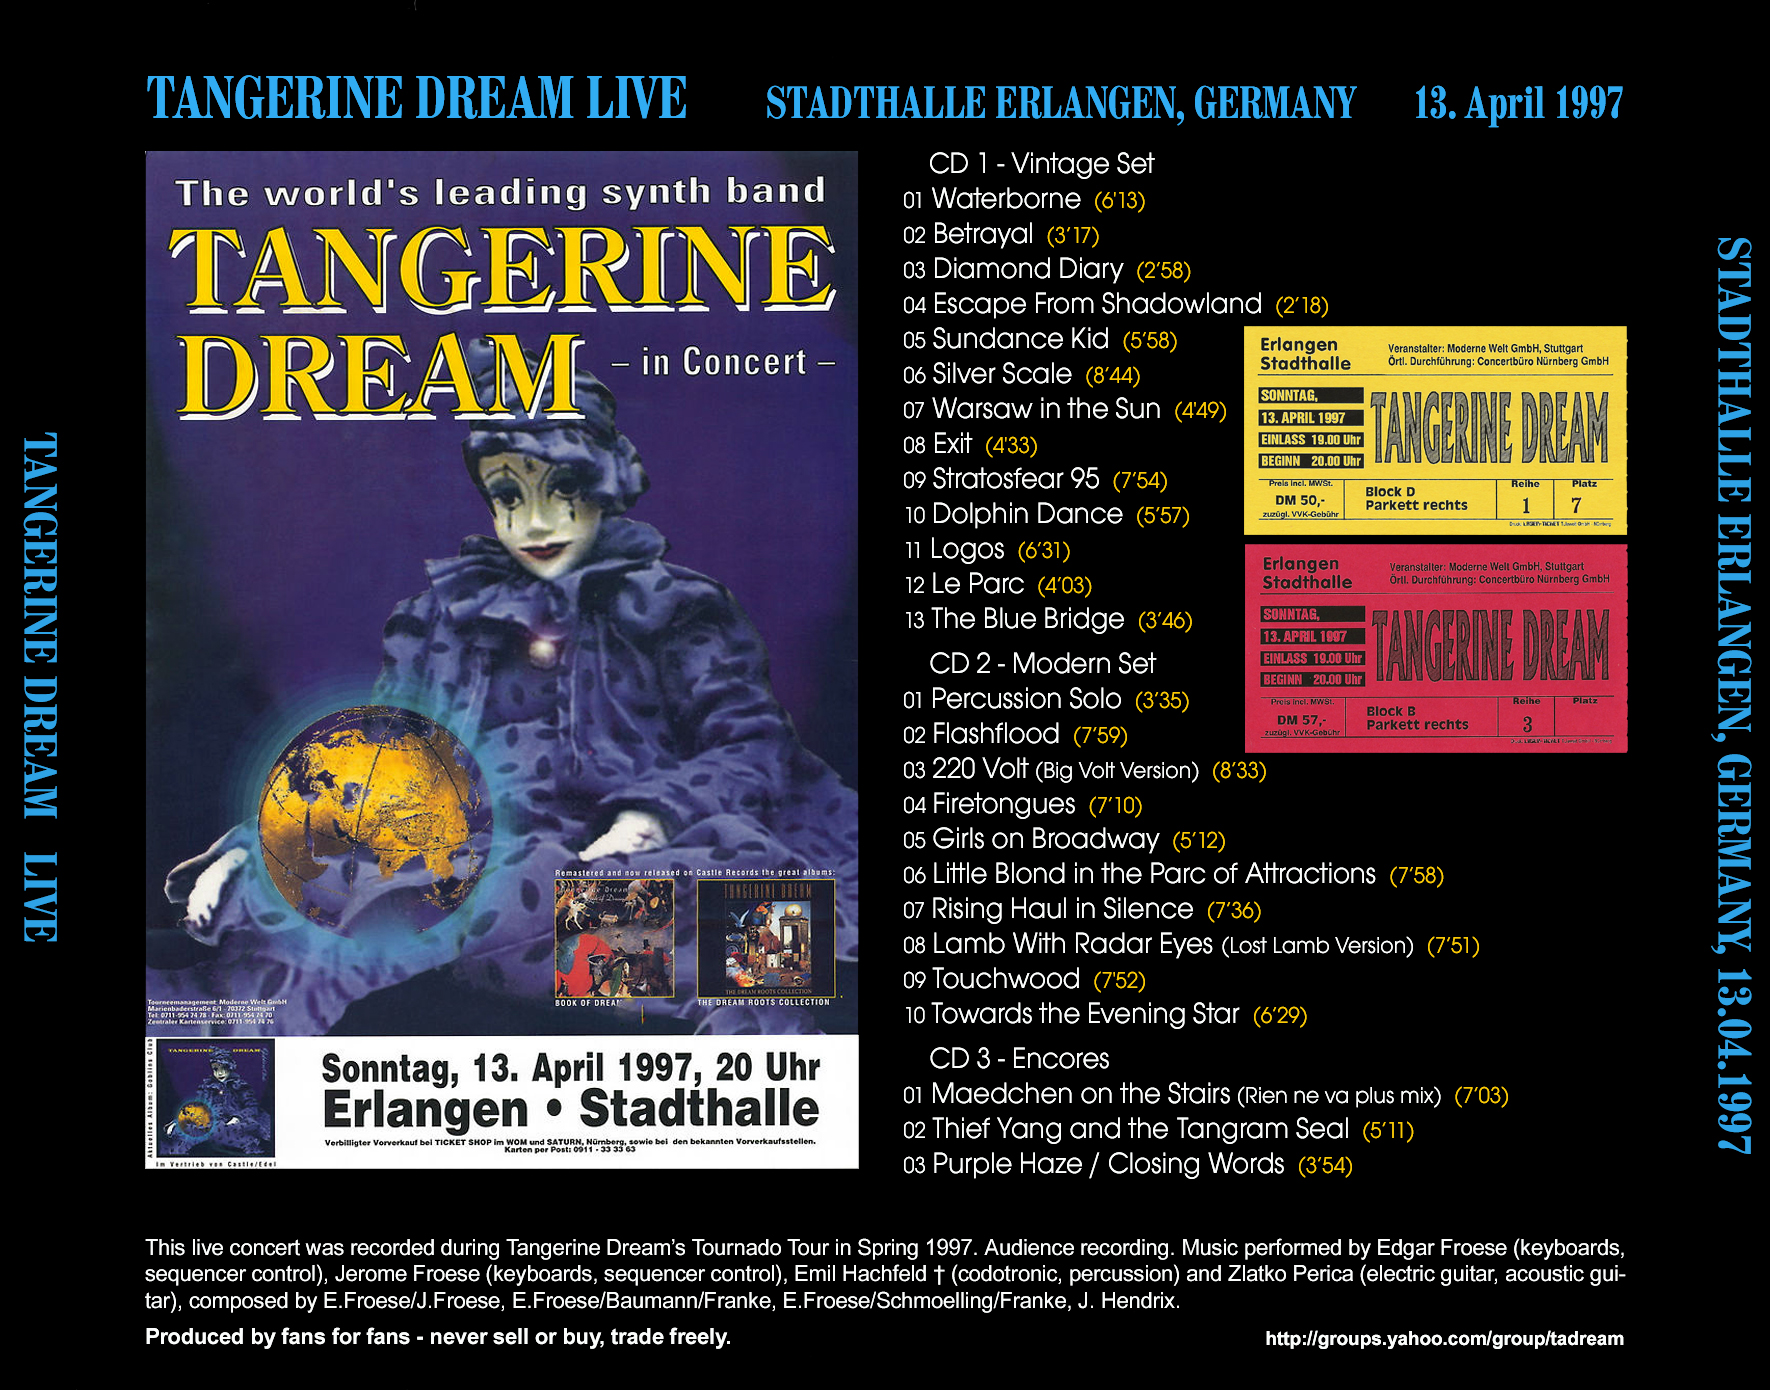 TangerineDream1997-04-13StadthalleErlangenGermany (1).jpg